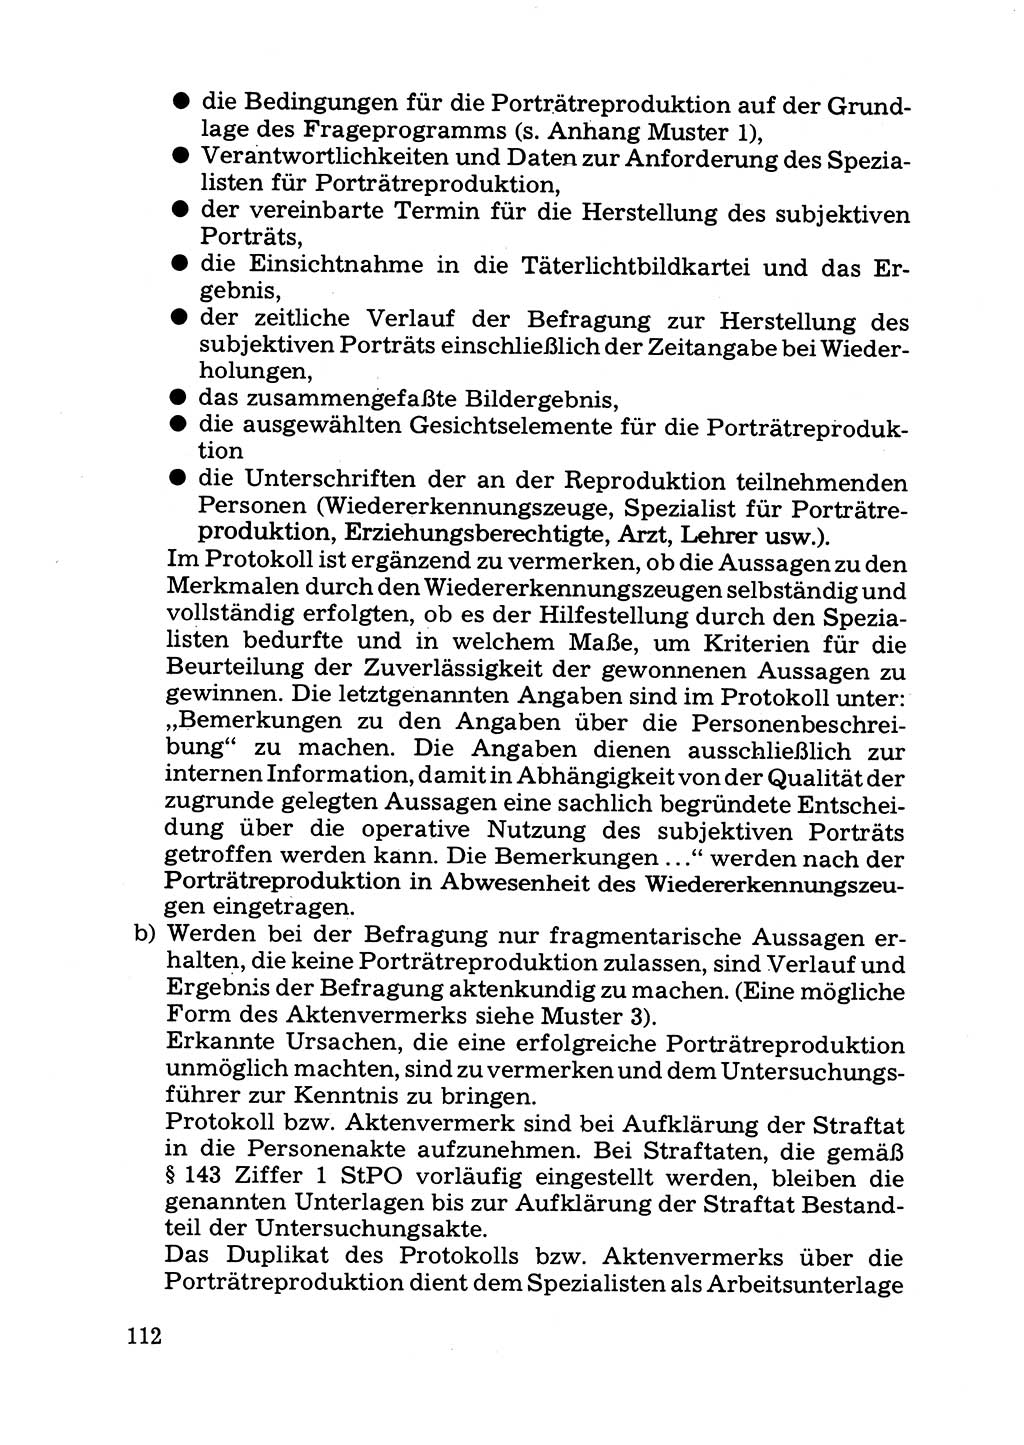 Das subjektive Porträt [Deutsche Demokratische Republik (DDR)] 1981, Seite 112 (Subj. Port. DDR 1981, S. 112)